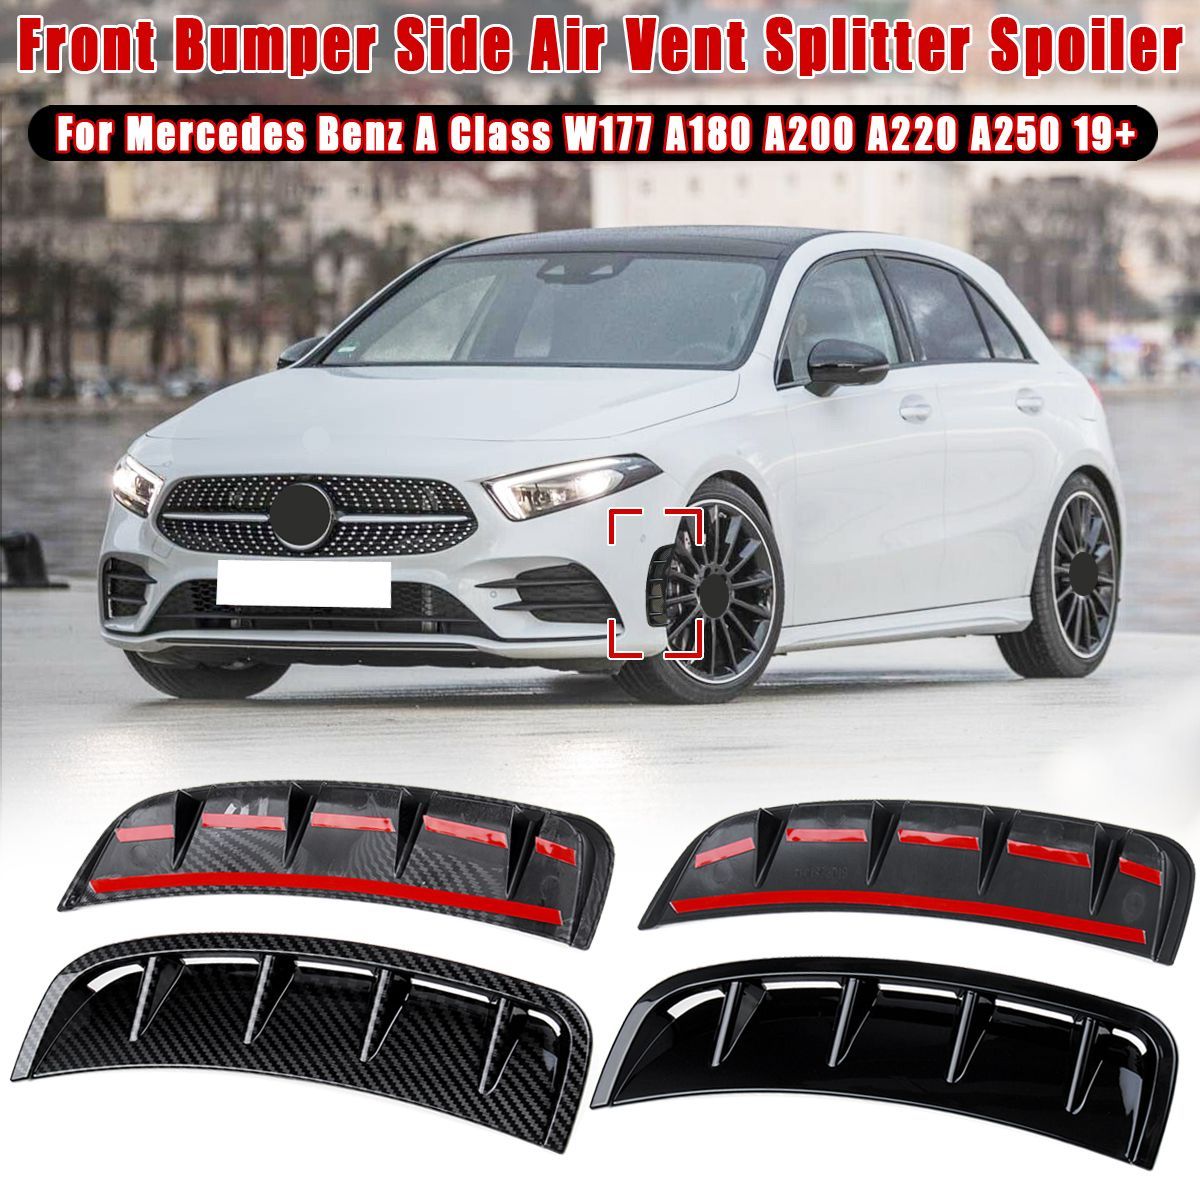 Front-Bumper-Side-Air-Vent-Splitter-Spoiler-Canard-For-Mercedes-A-Class-W177-A180-A200-A220-A250-201-1654801